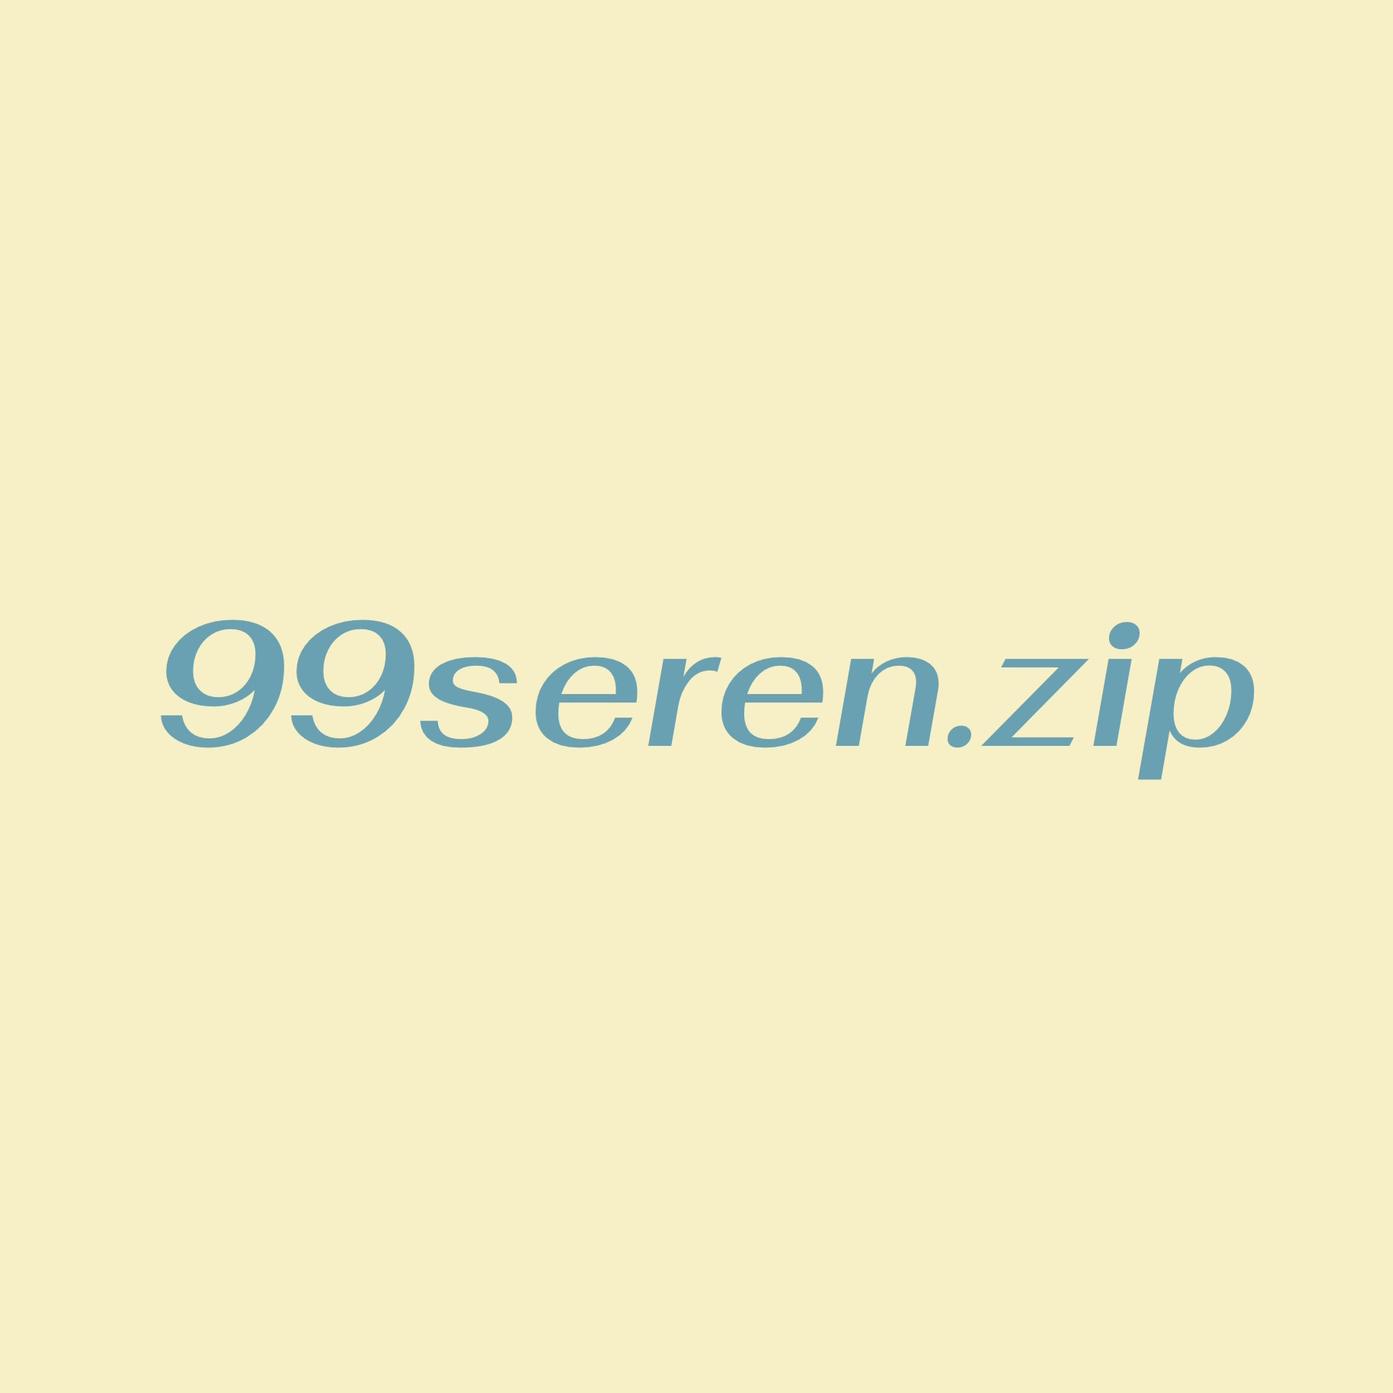 รูปภาพของ 99seren.zip